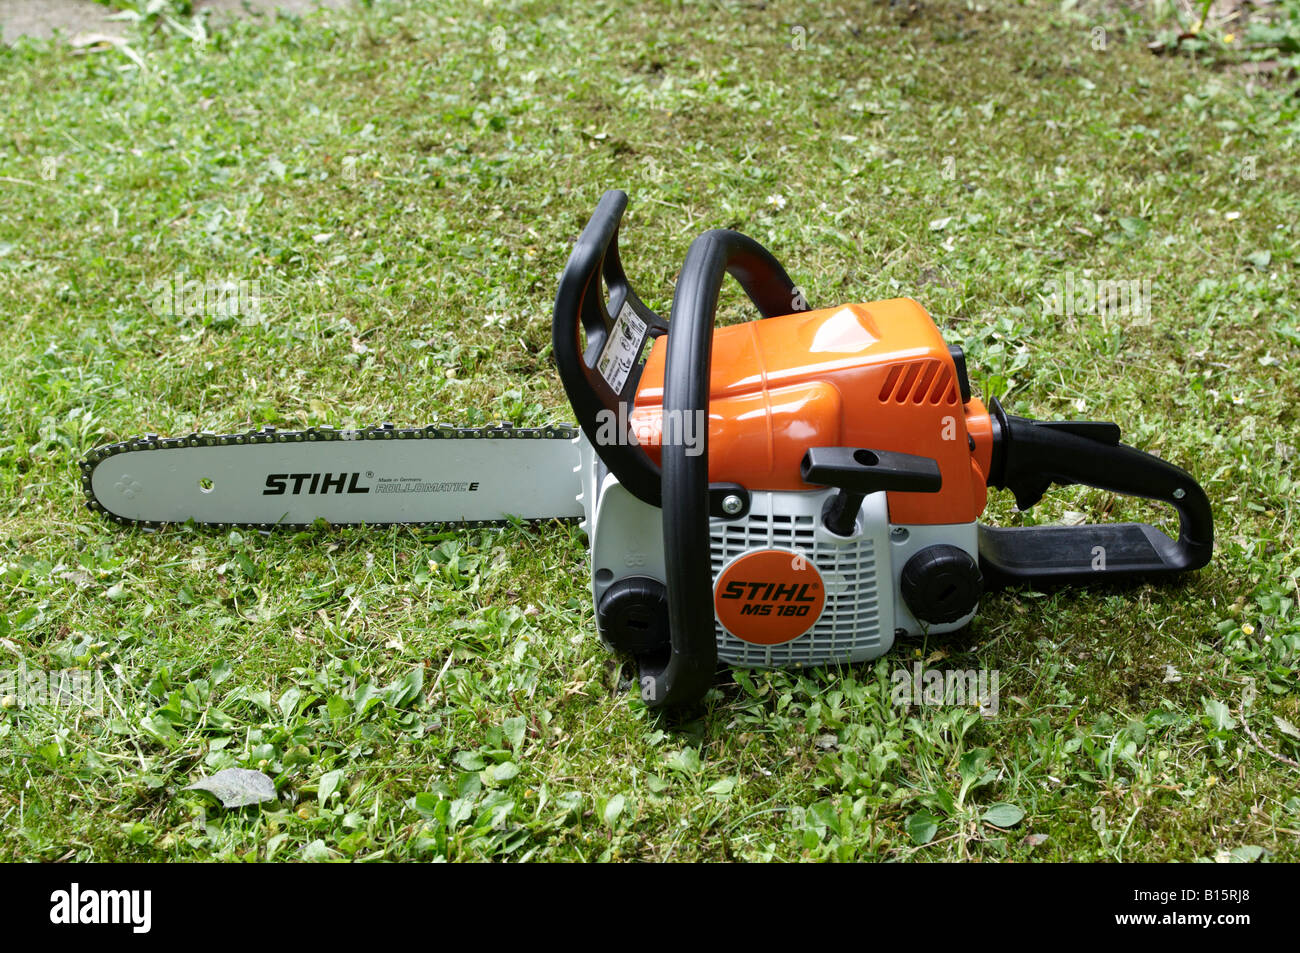 Stihl chainsaw Stihl MS 180 Stock Photo - Alamy